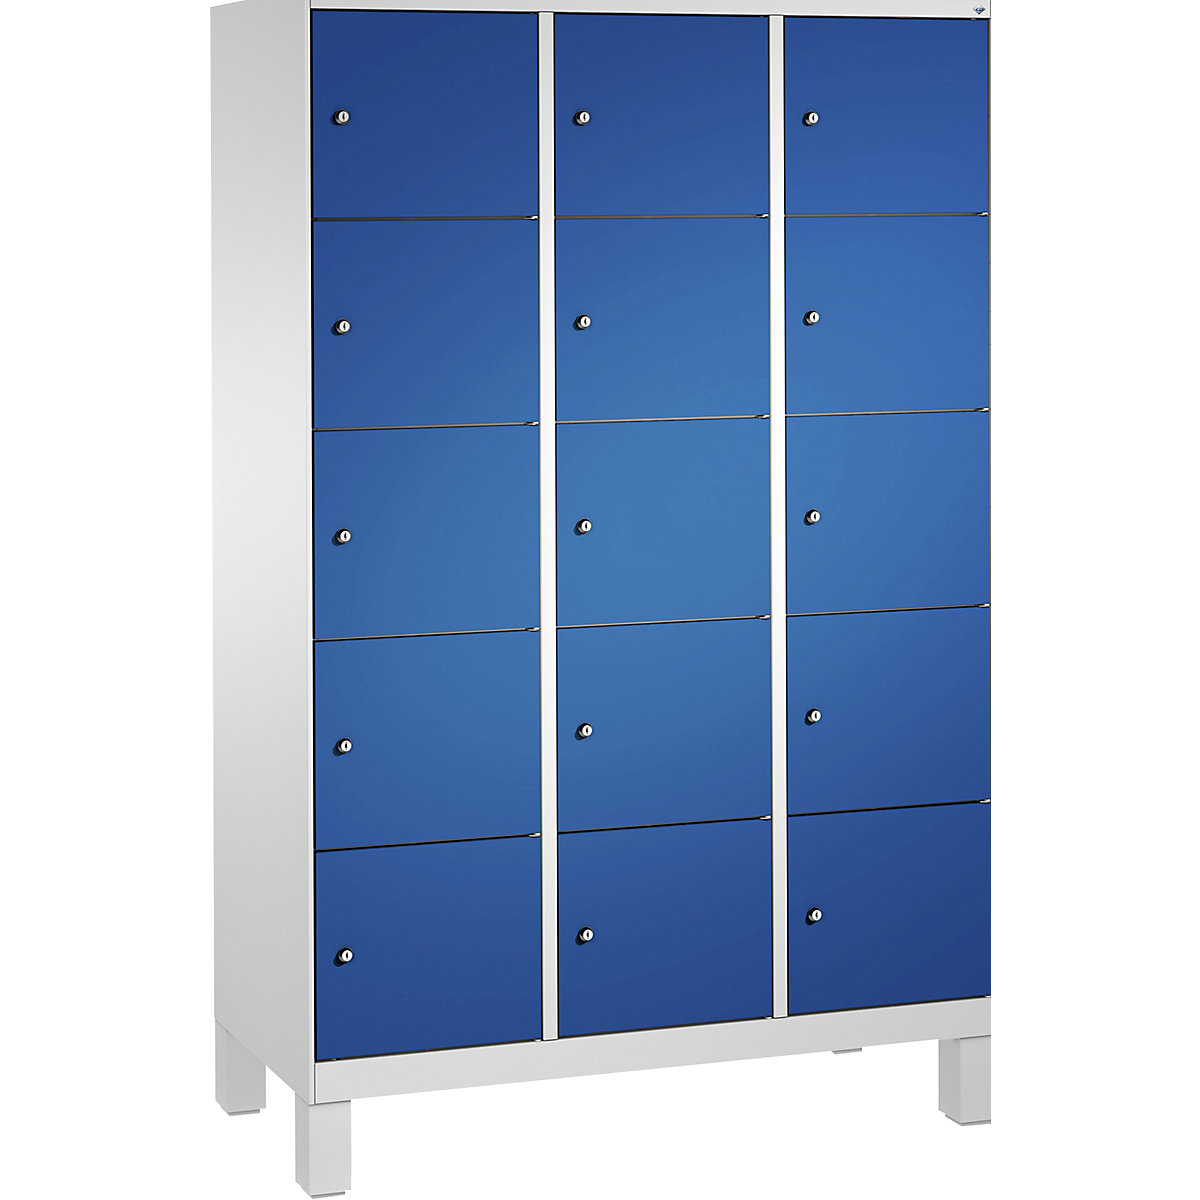 Armoire à casiers sur pieds EVOLO – C+P, 3 compartiments, 5 casiers chacun, largeur compartiments 400 mm, gris clair / bleu gentiane-9